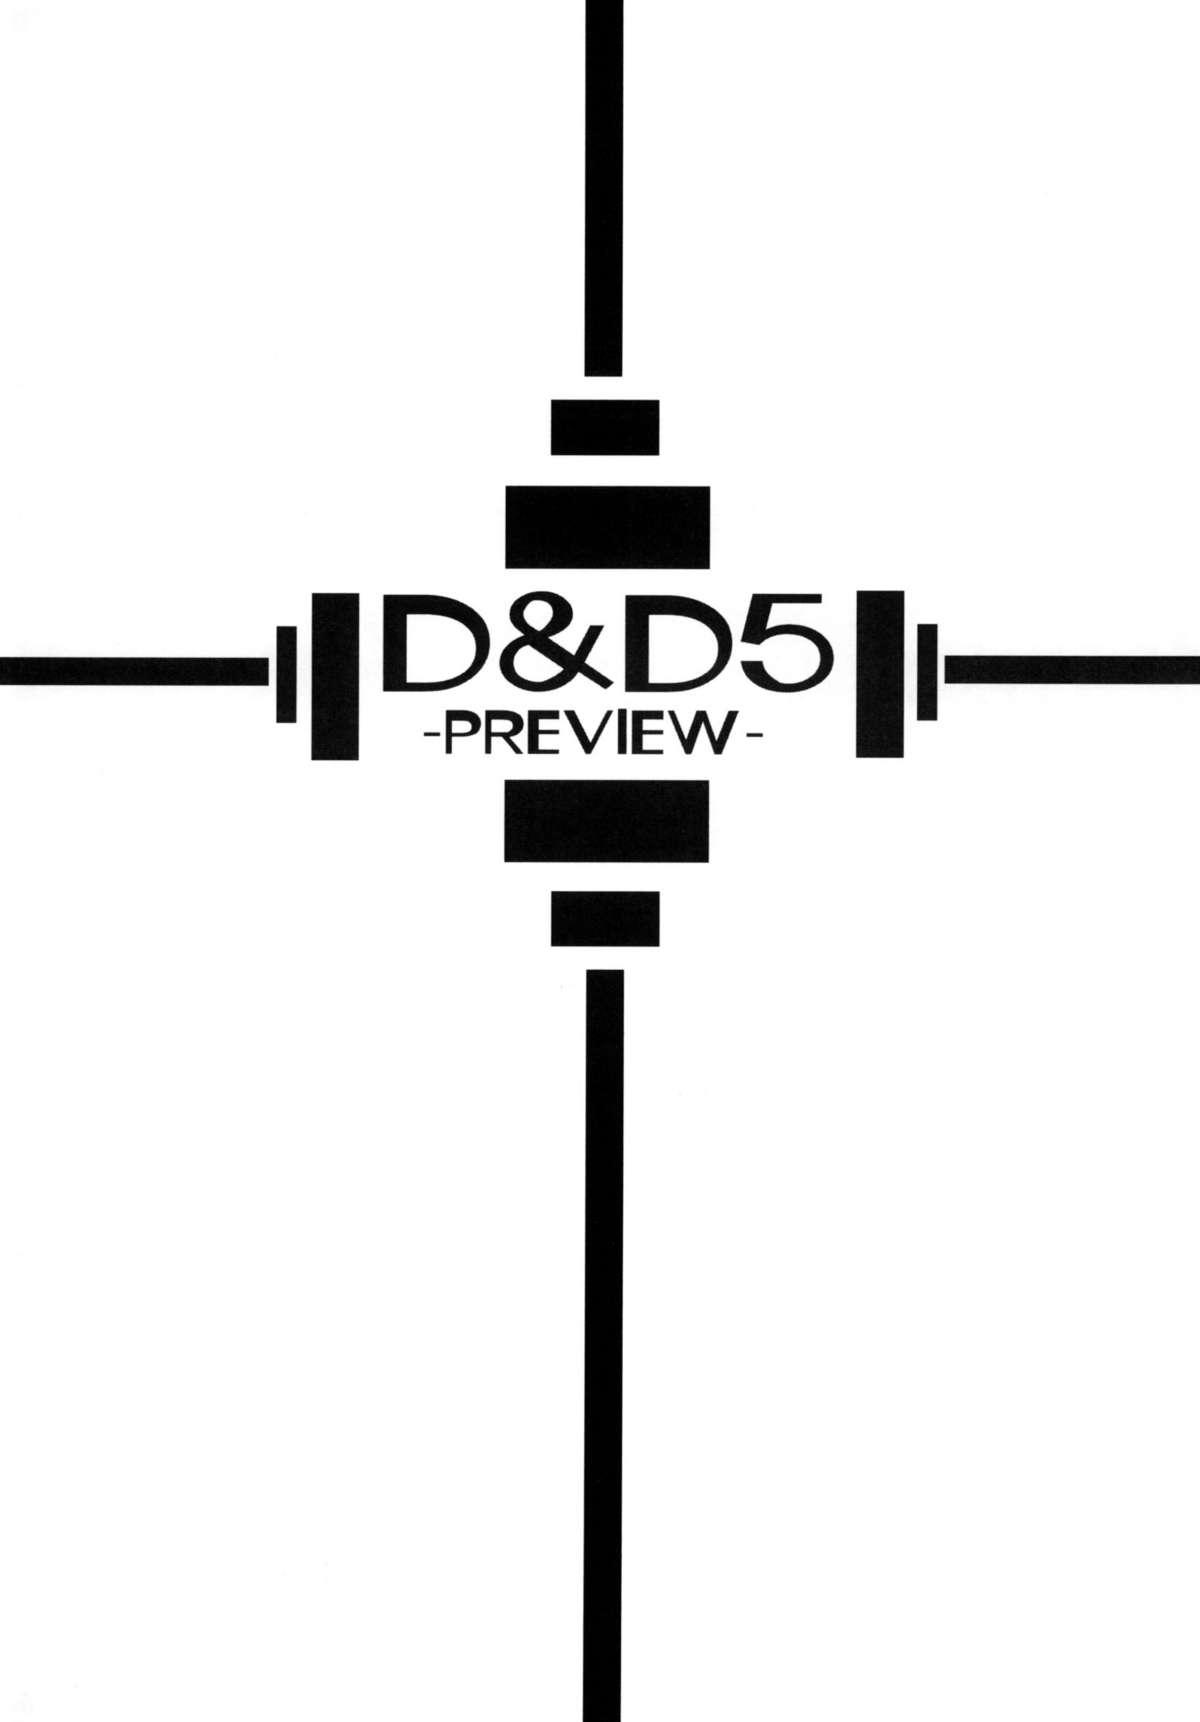 D&D 05 1